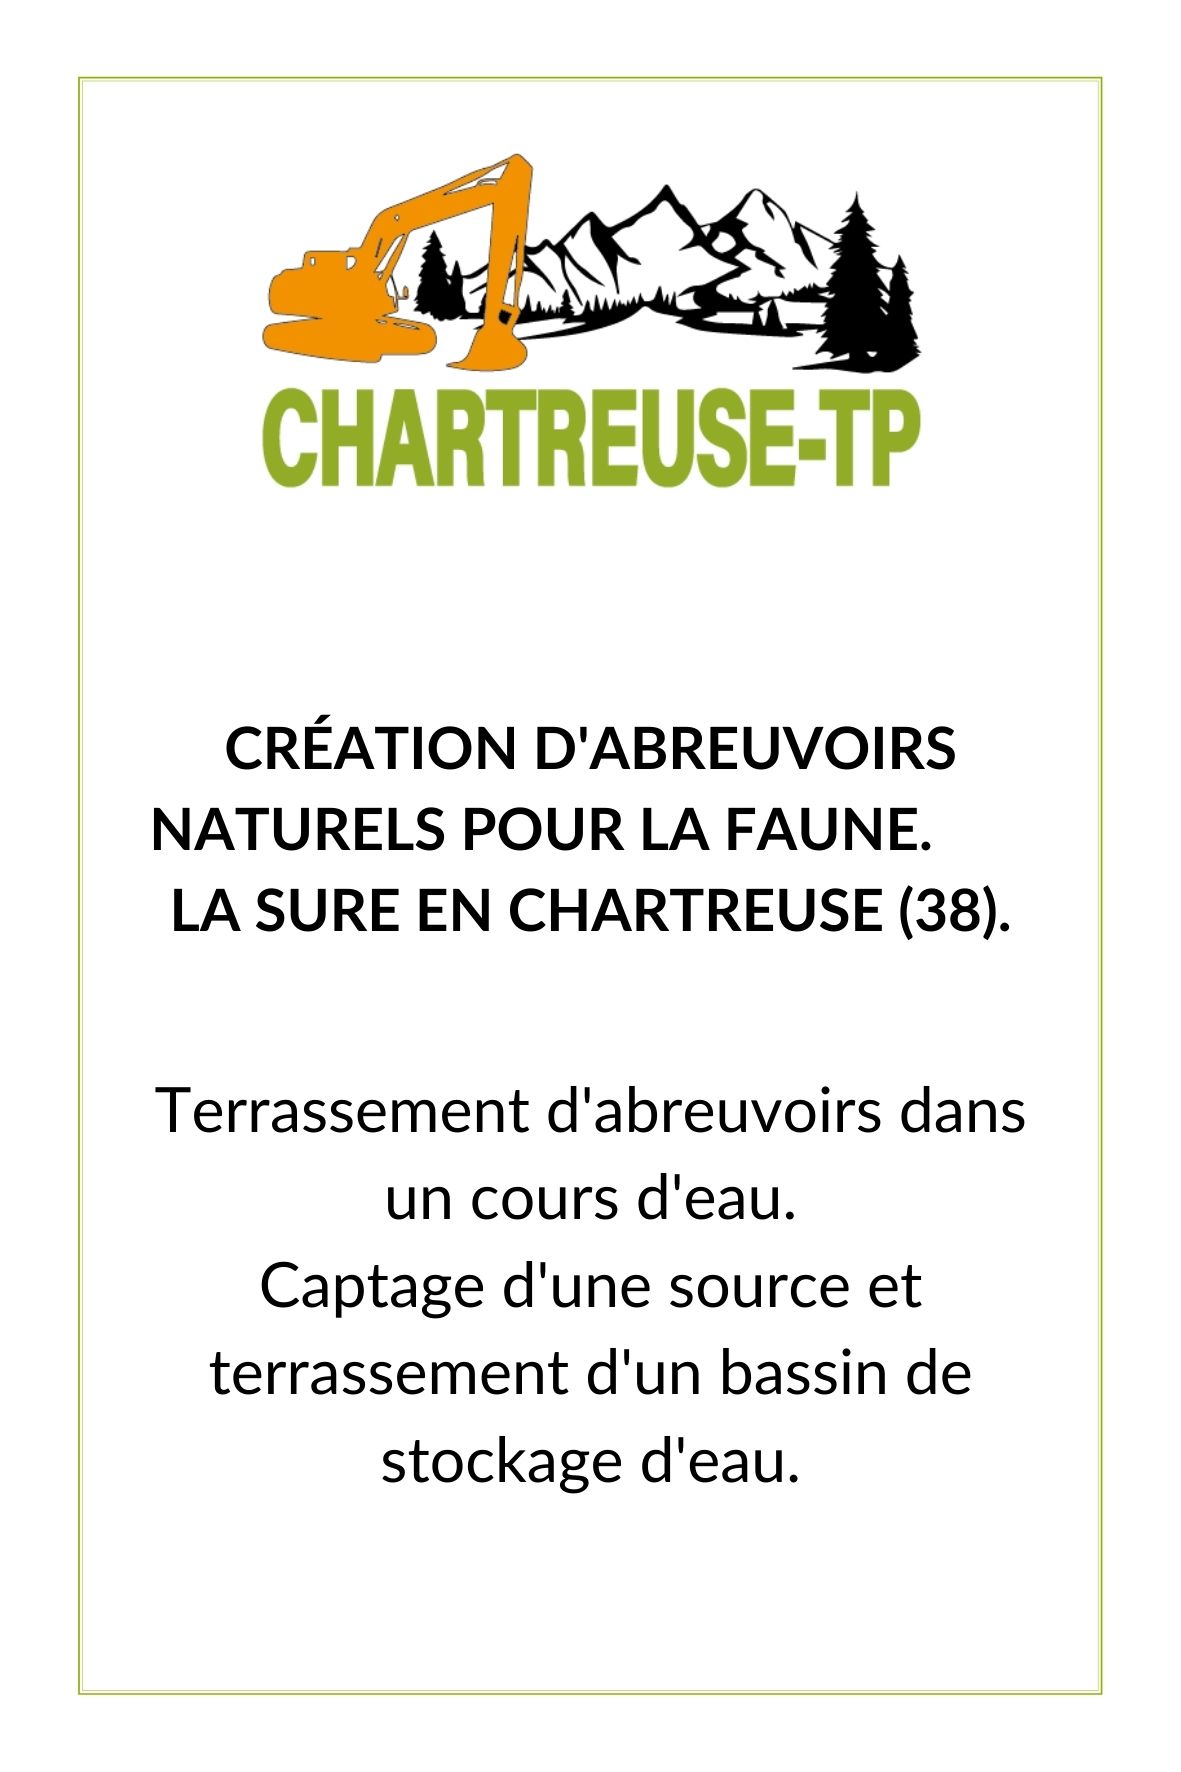 Chartreuse-TP création abreuvoir naturel pour faune